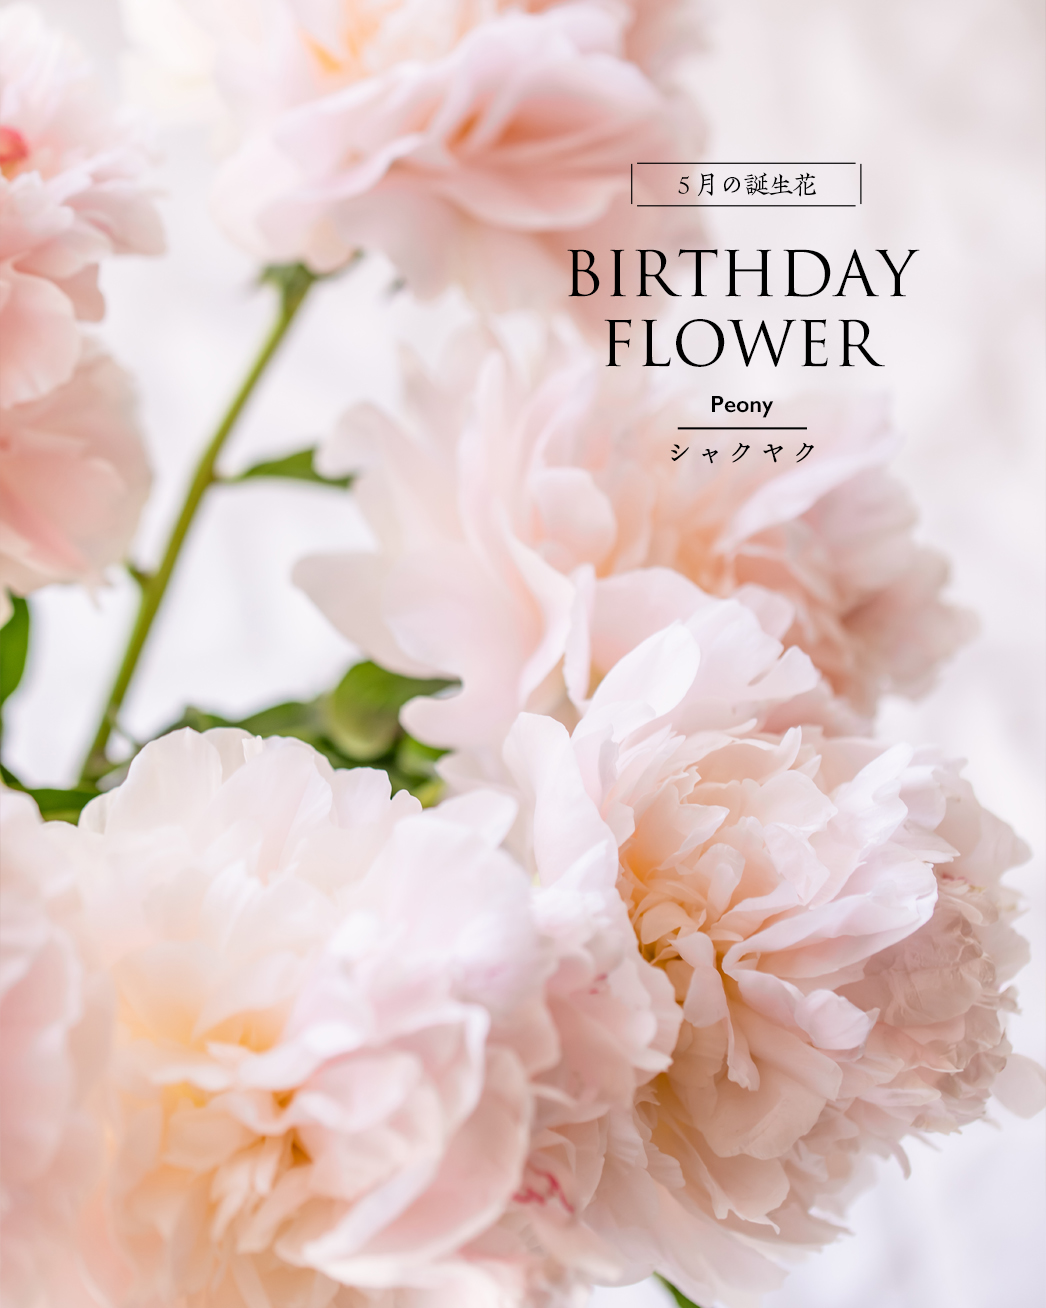 5月の誕生花、芍薬のブーケ|エーテルのブーケプレゼント